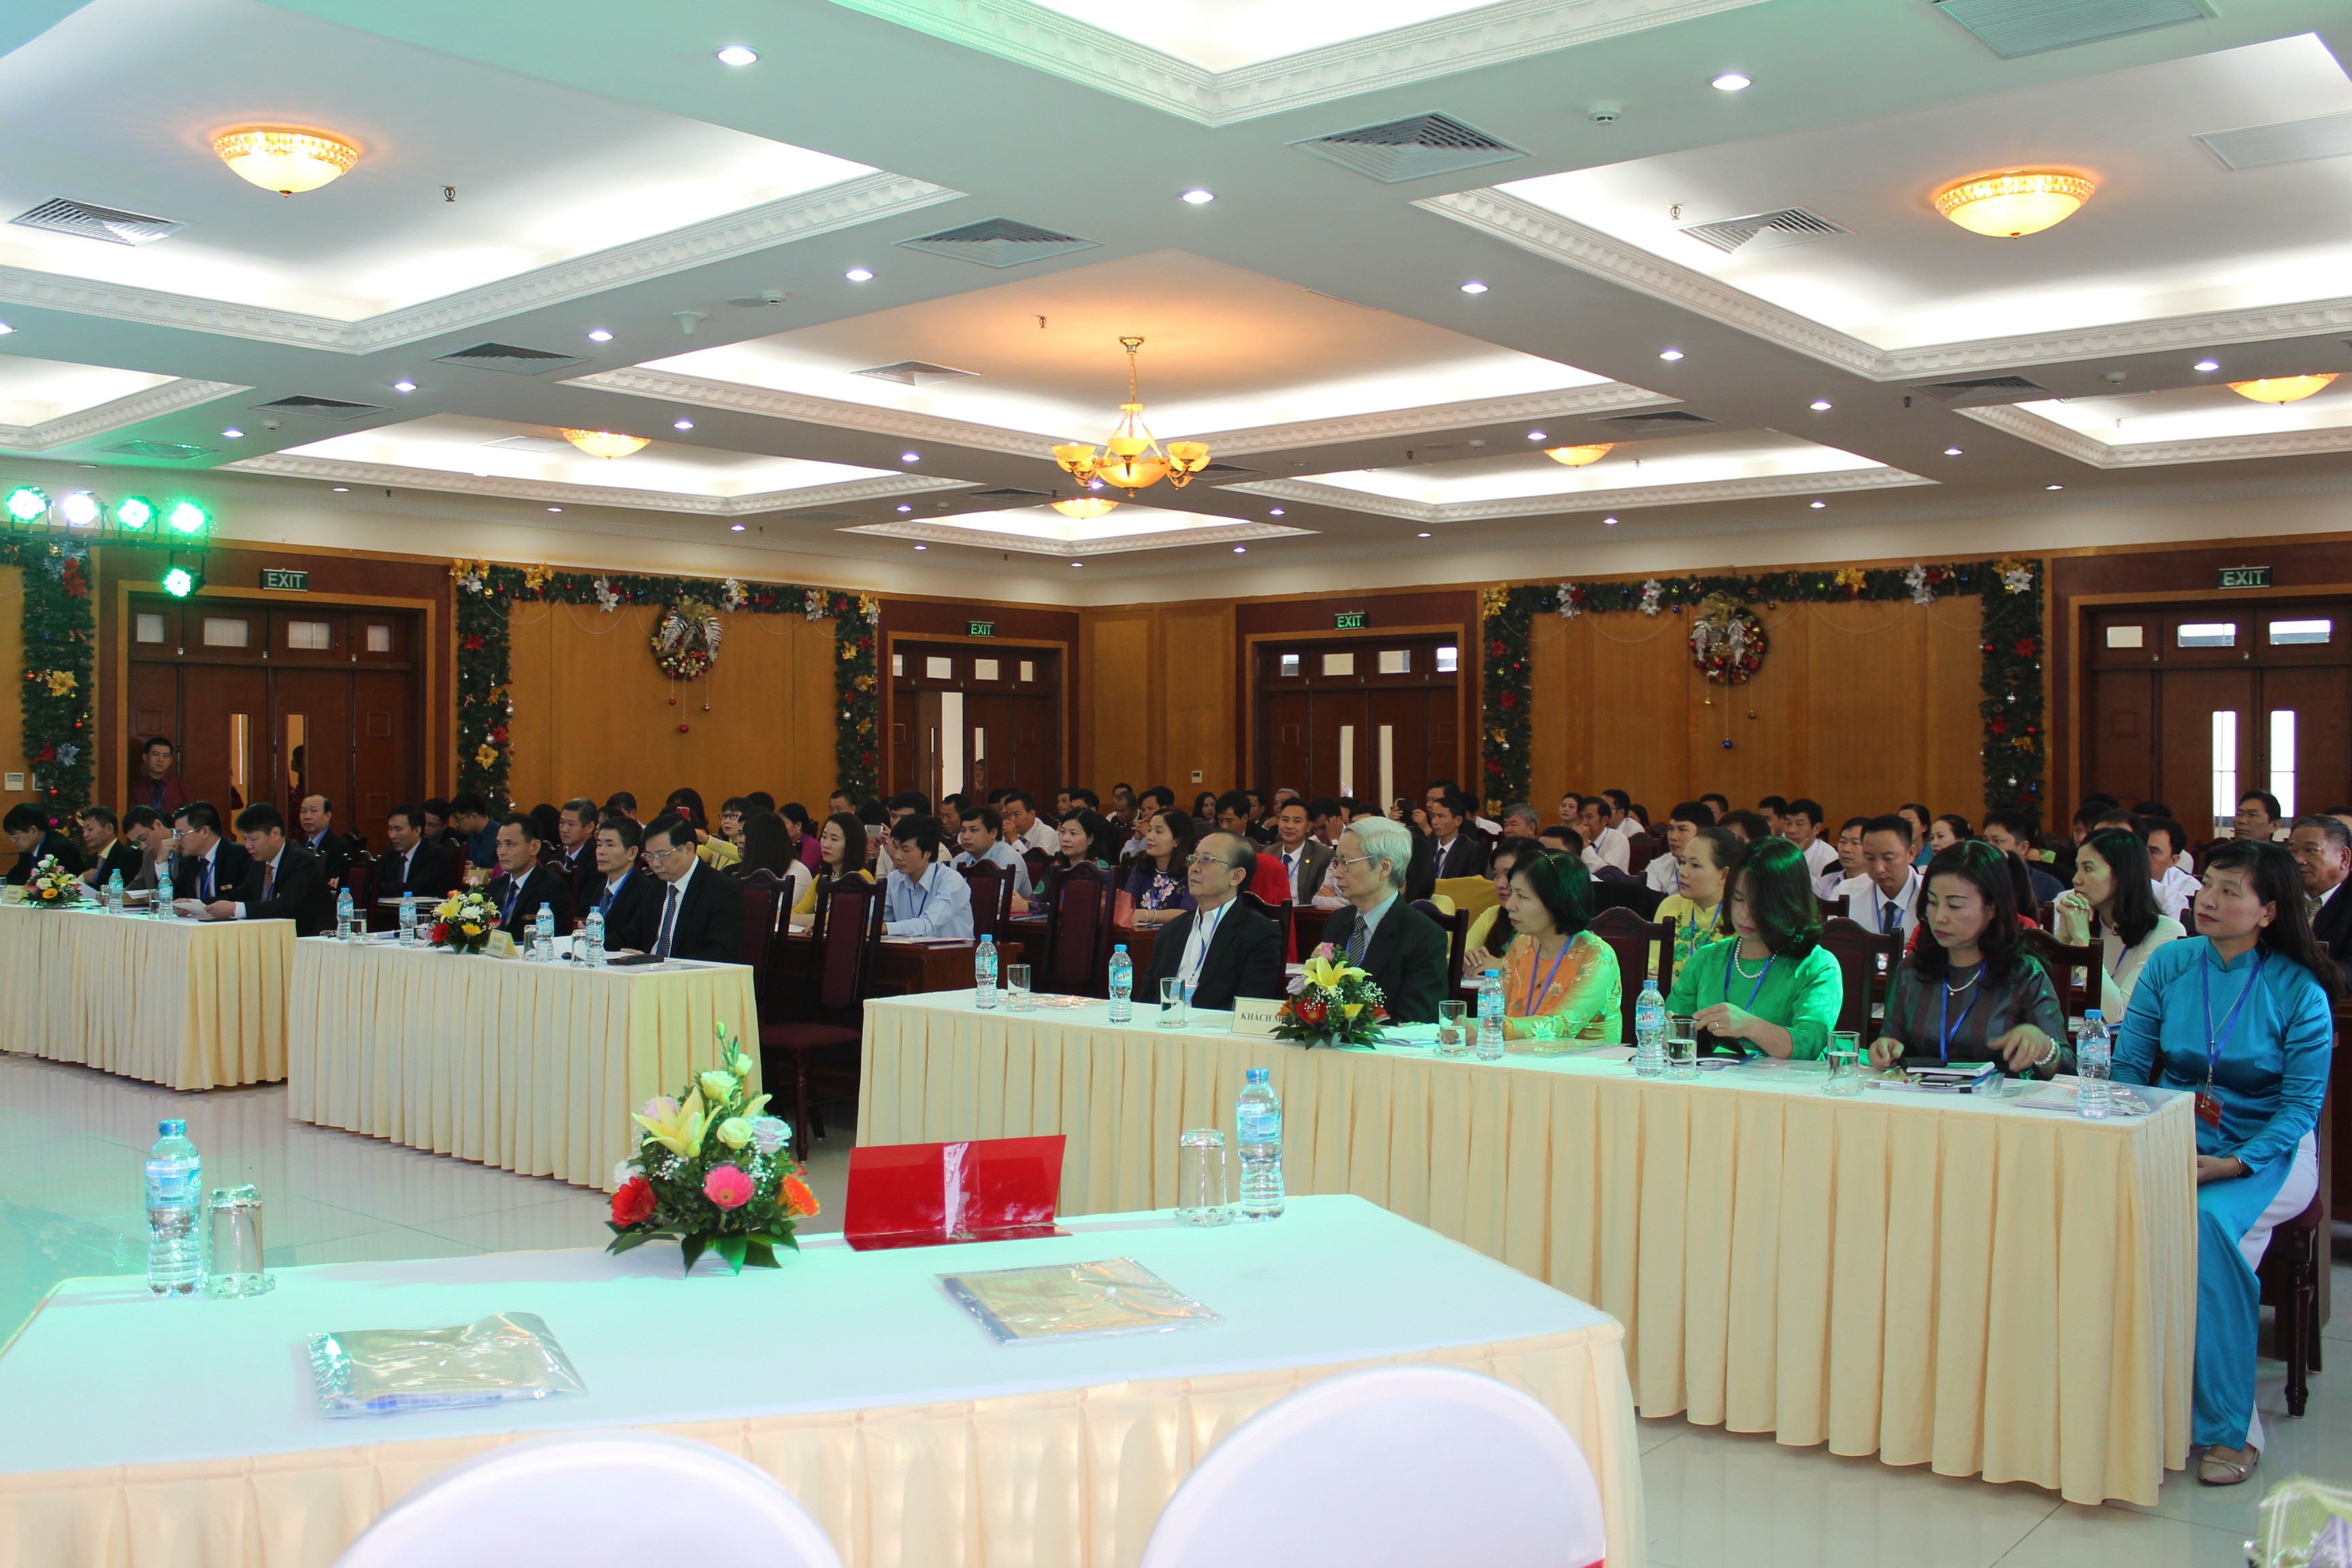 Đại hội Công đoàn Tổng công ty Lâm nghiệp Việt Nam lần thứ 5, nhiệm kỳ 2017 - 2022